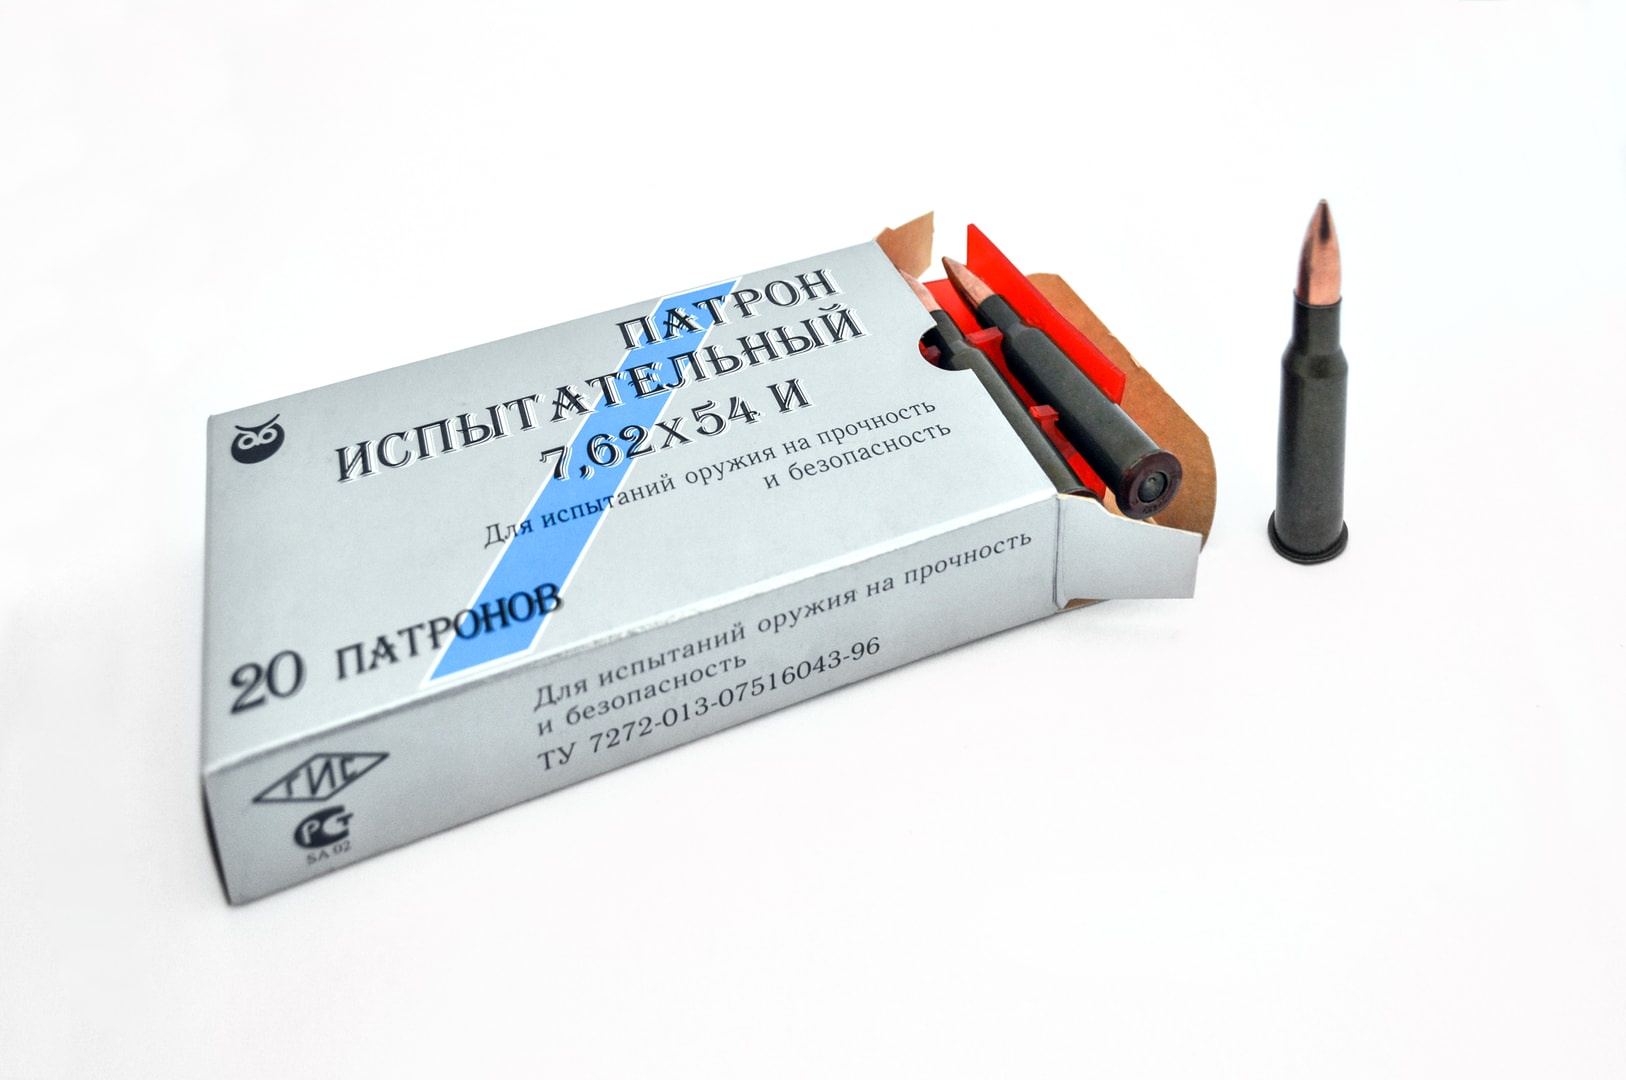 ЦНИИТОЧМАШ изготовил партию испытательных патронов для производителей стрелкового оружия.